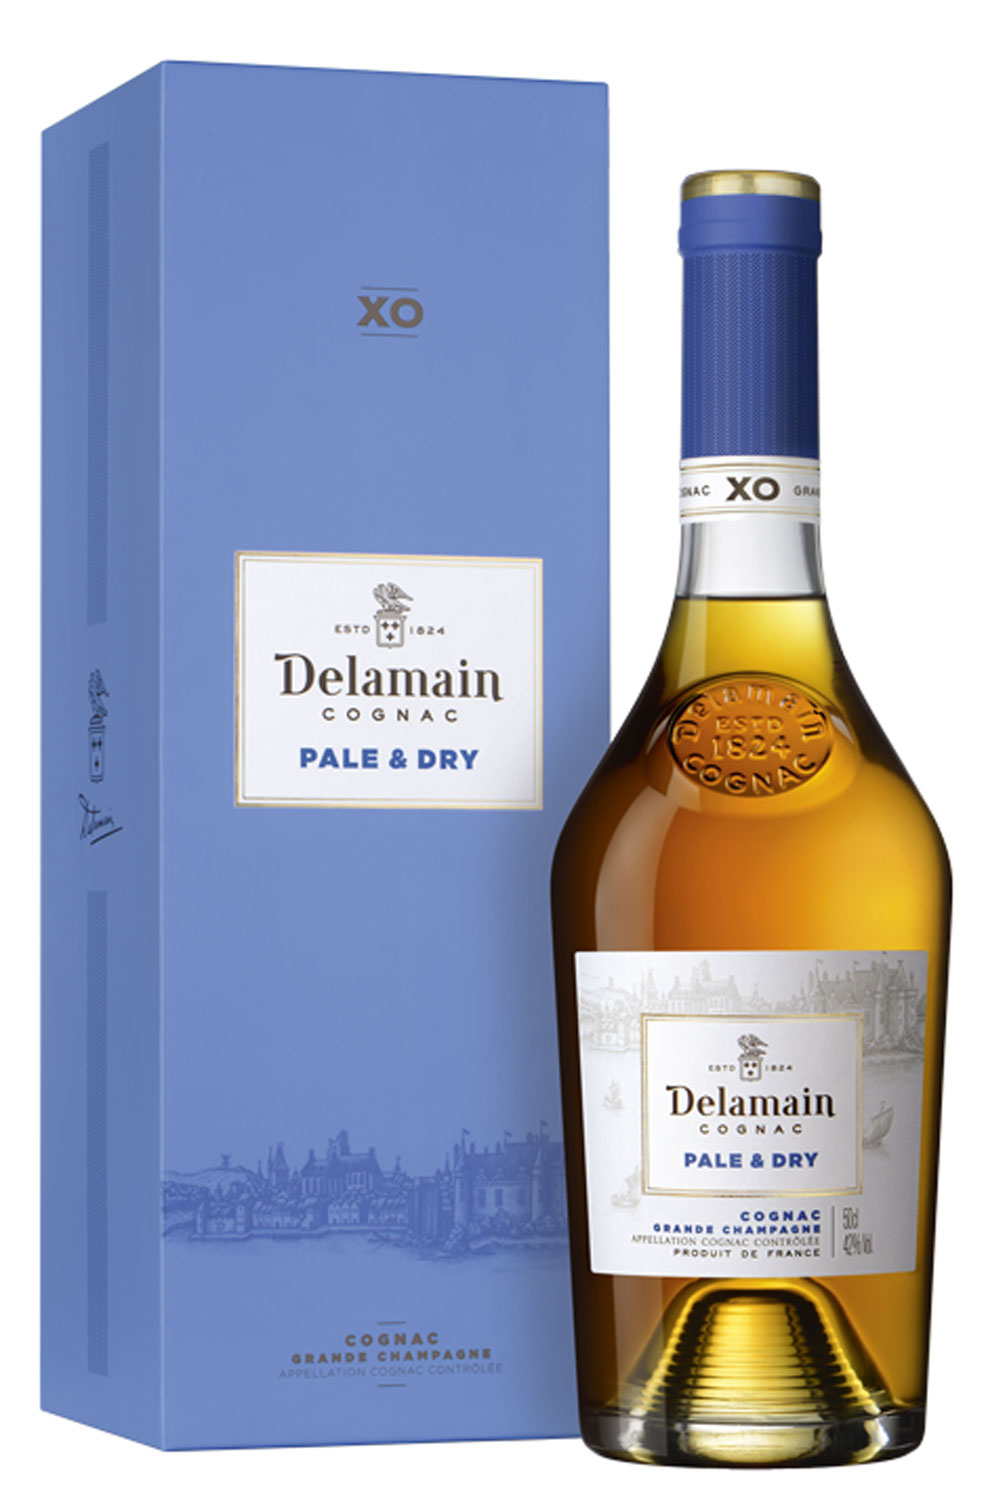 Delamain Cognac Pale & Dry XO